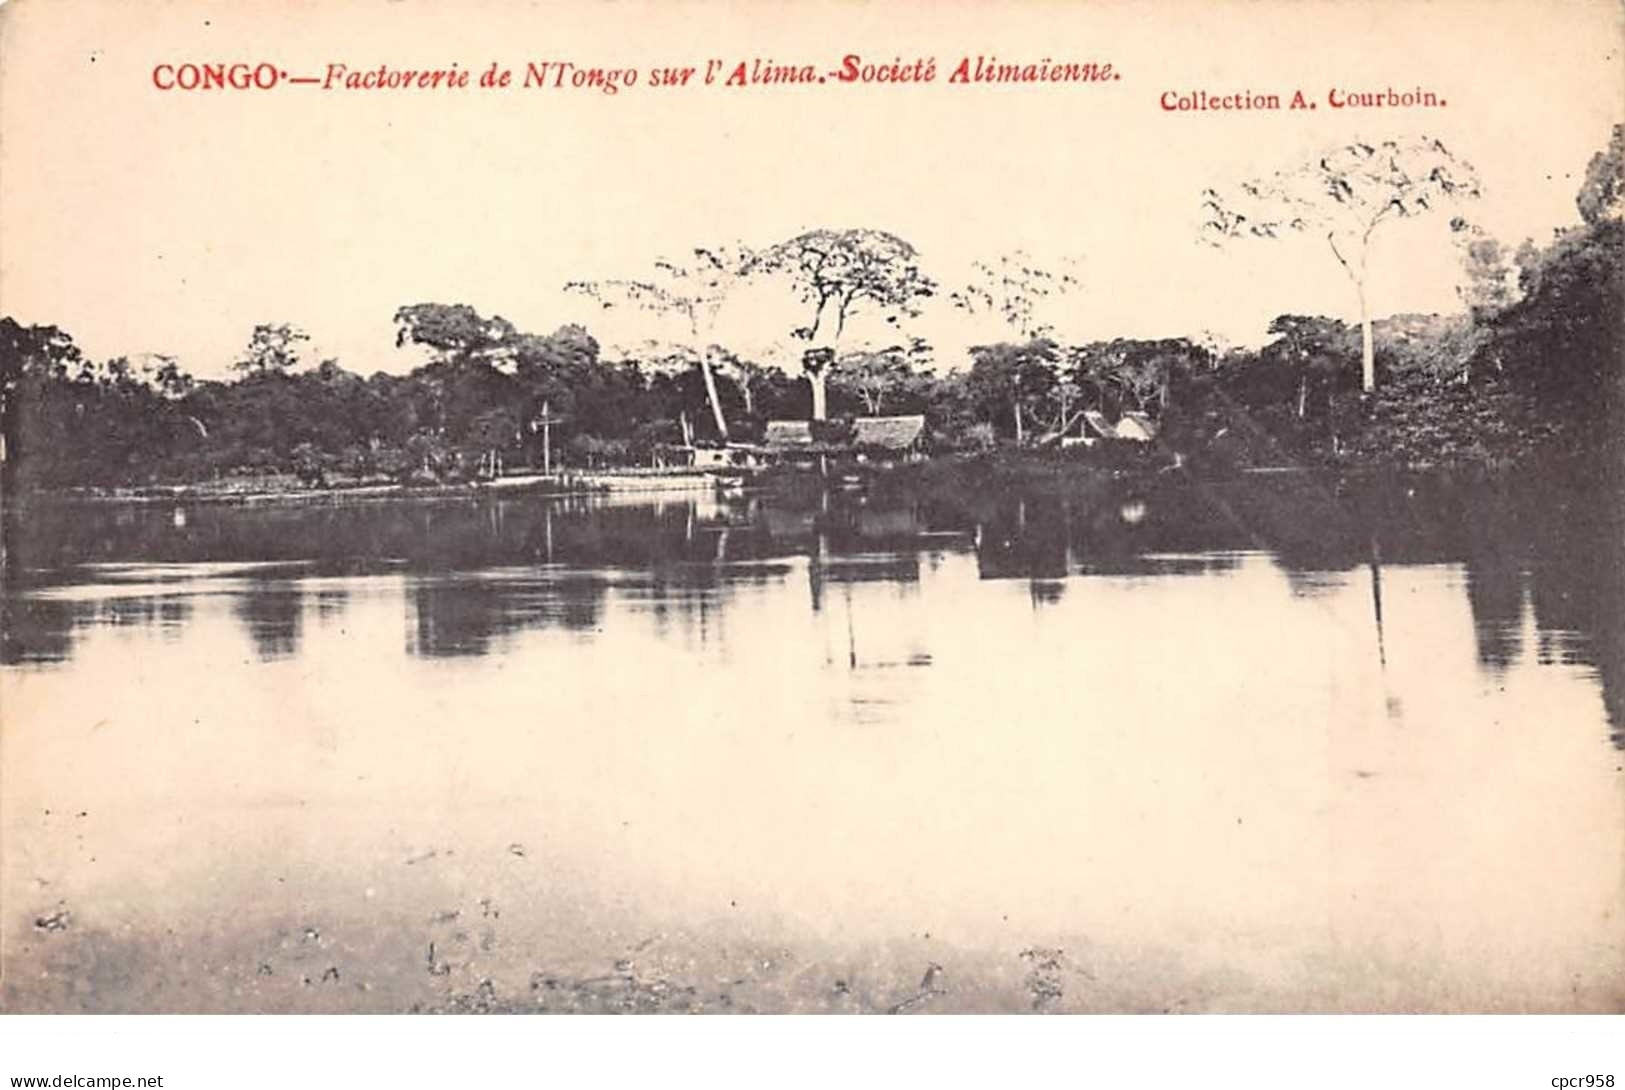 Congo Français - N°61549 - Factories De N'Tongo Sur L'Alima - Société Alimaïnne - Congo Français